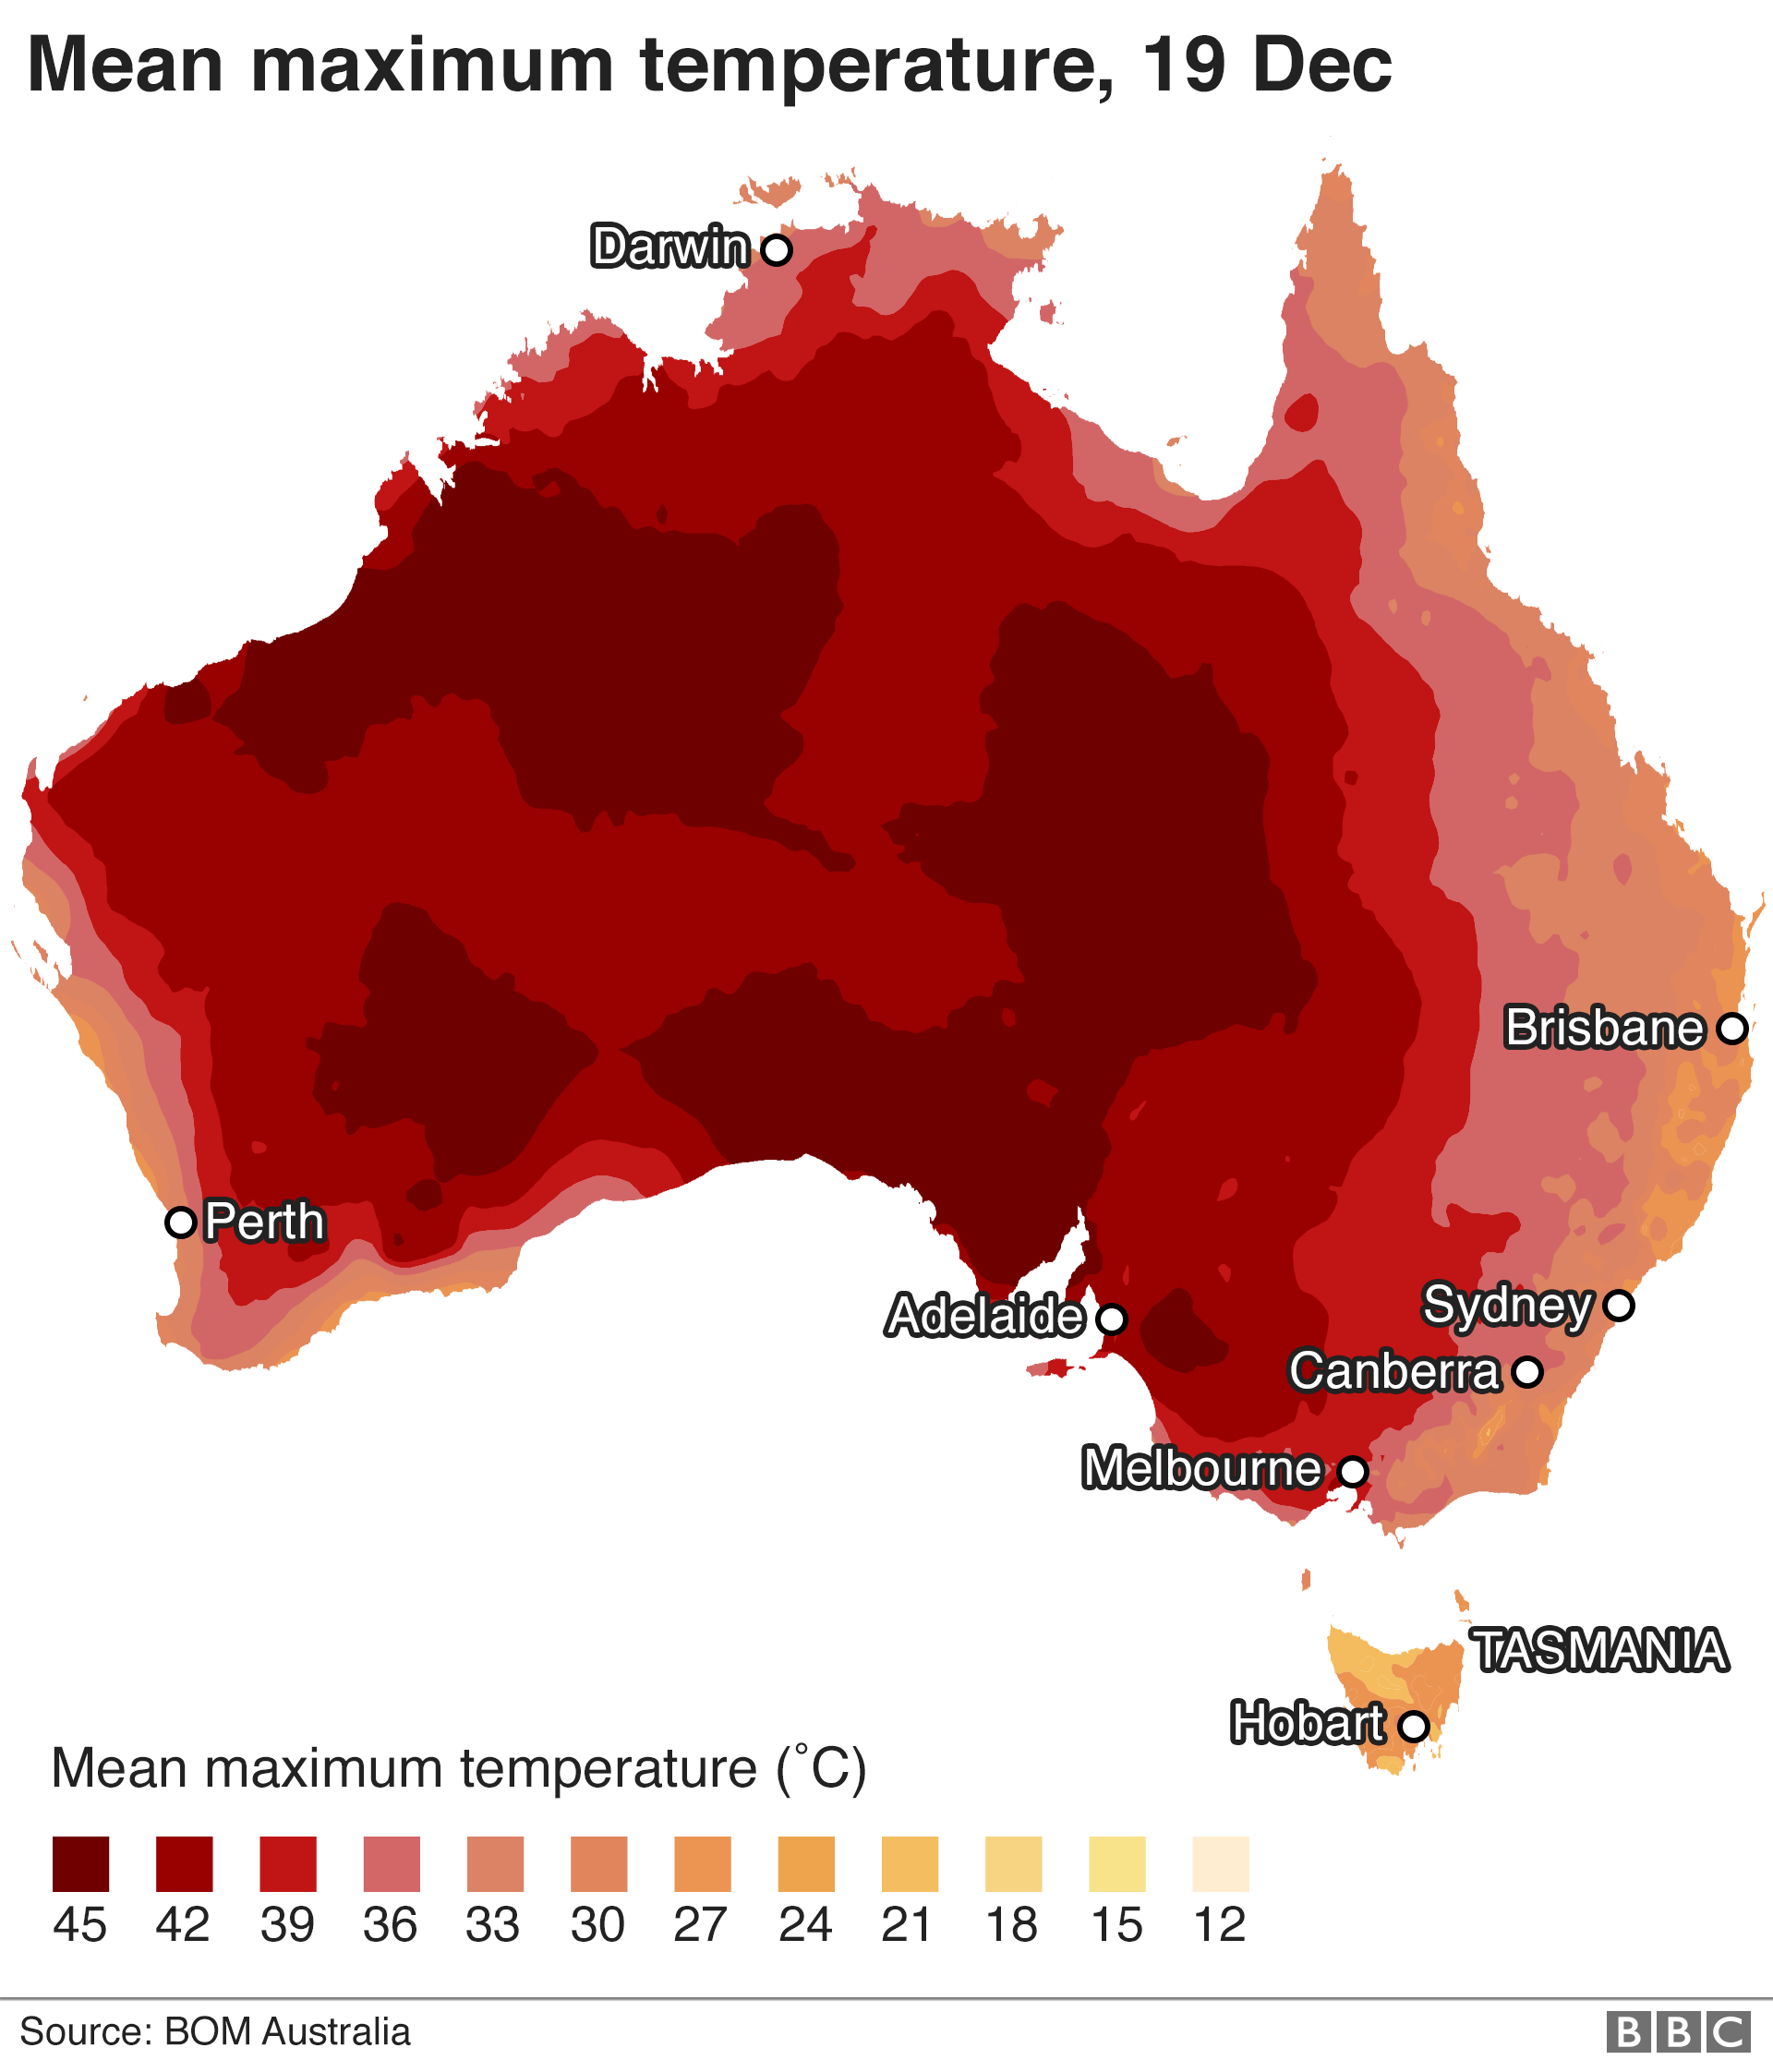 Maximum temperatures, 19 December